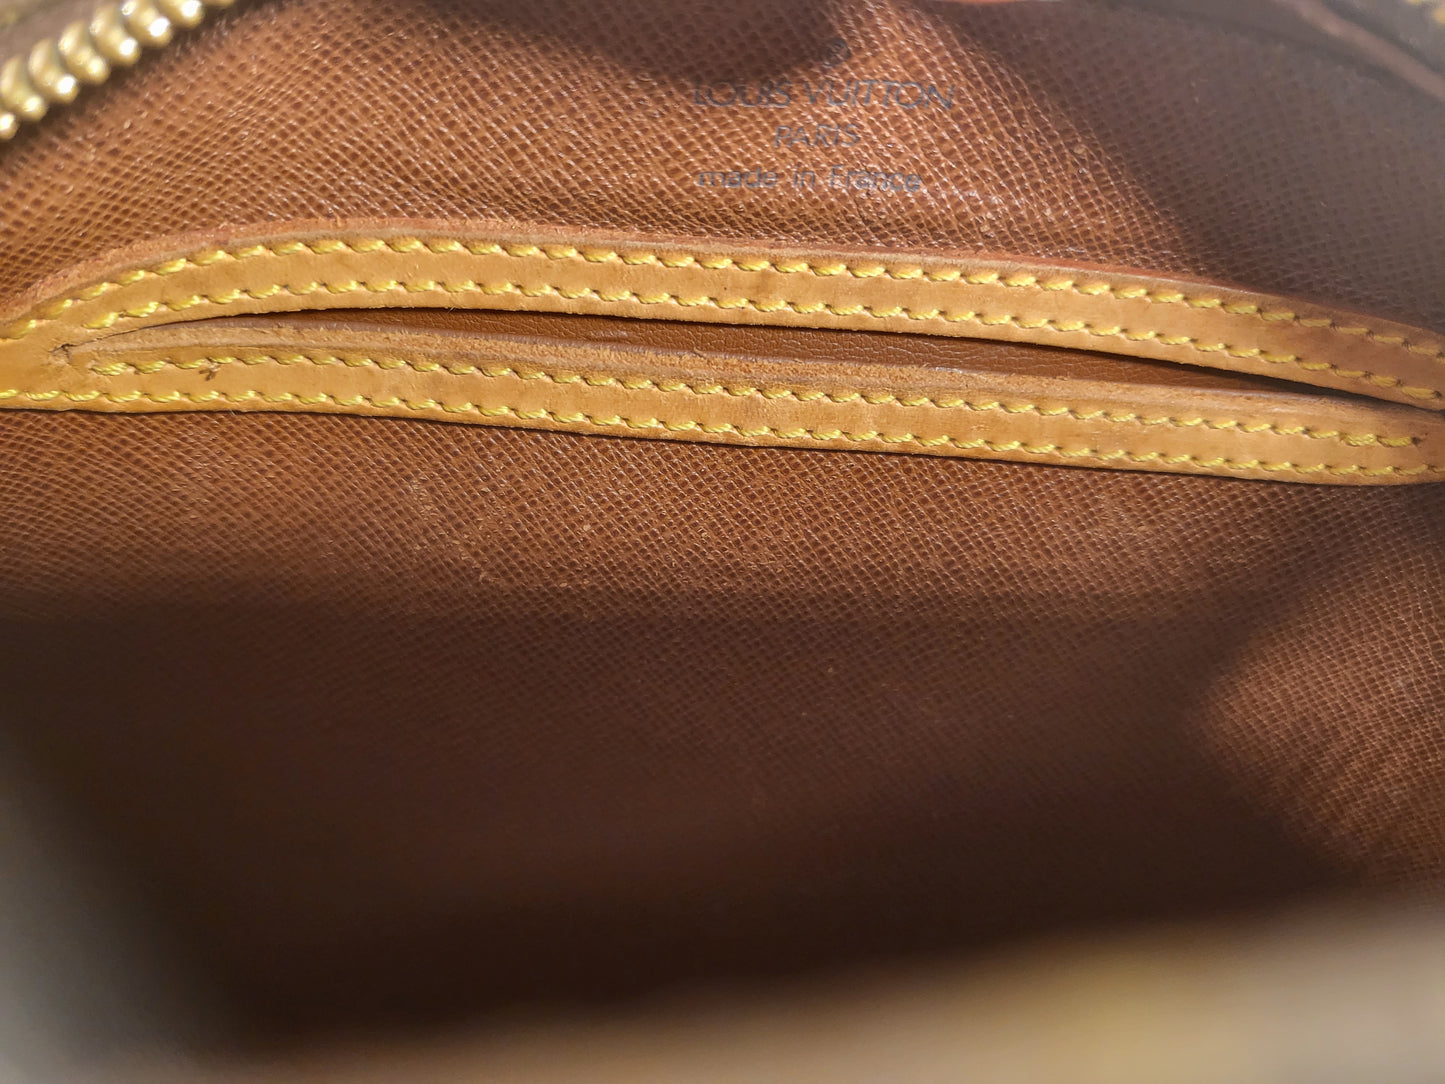 Authentic pre-owned Louis Vuitton Blois crossbody shoulder bag